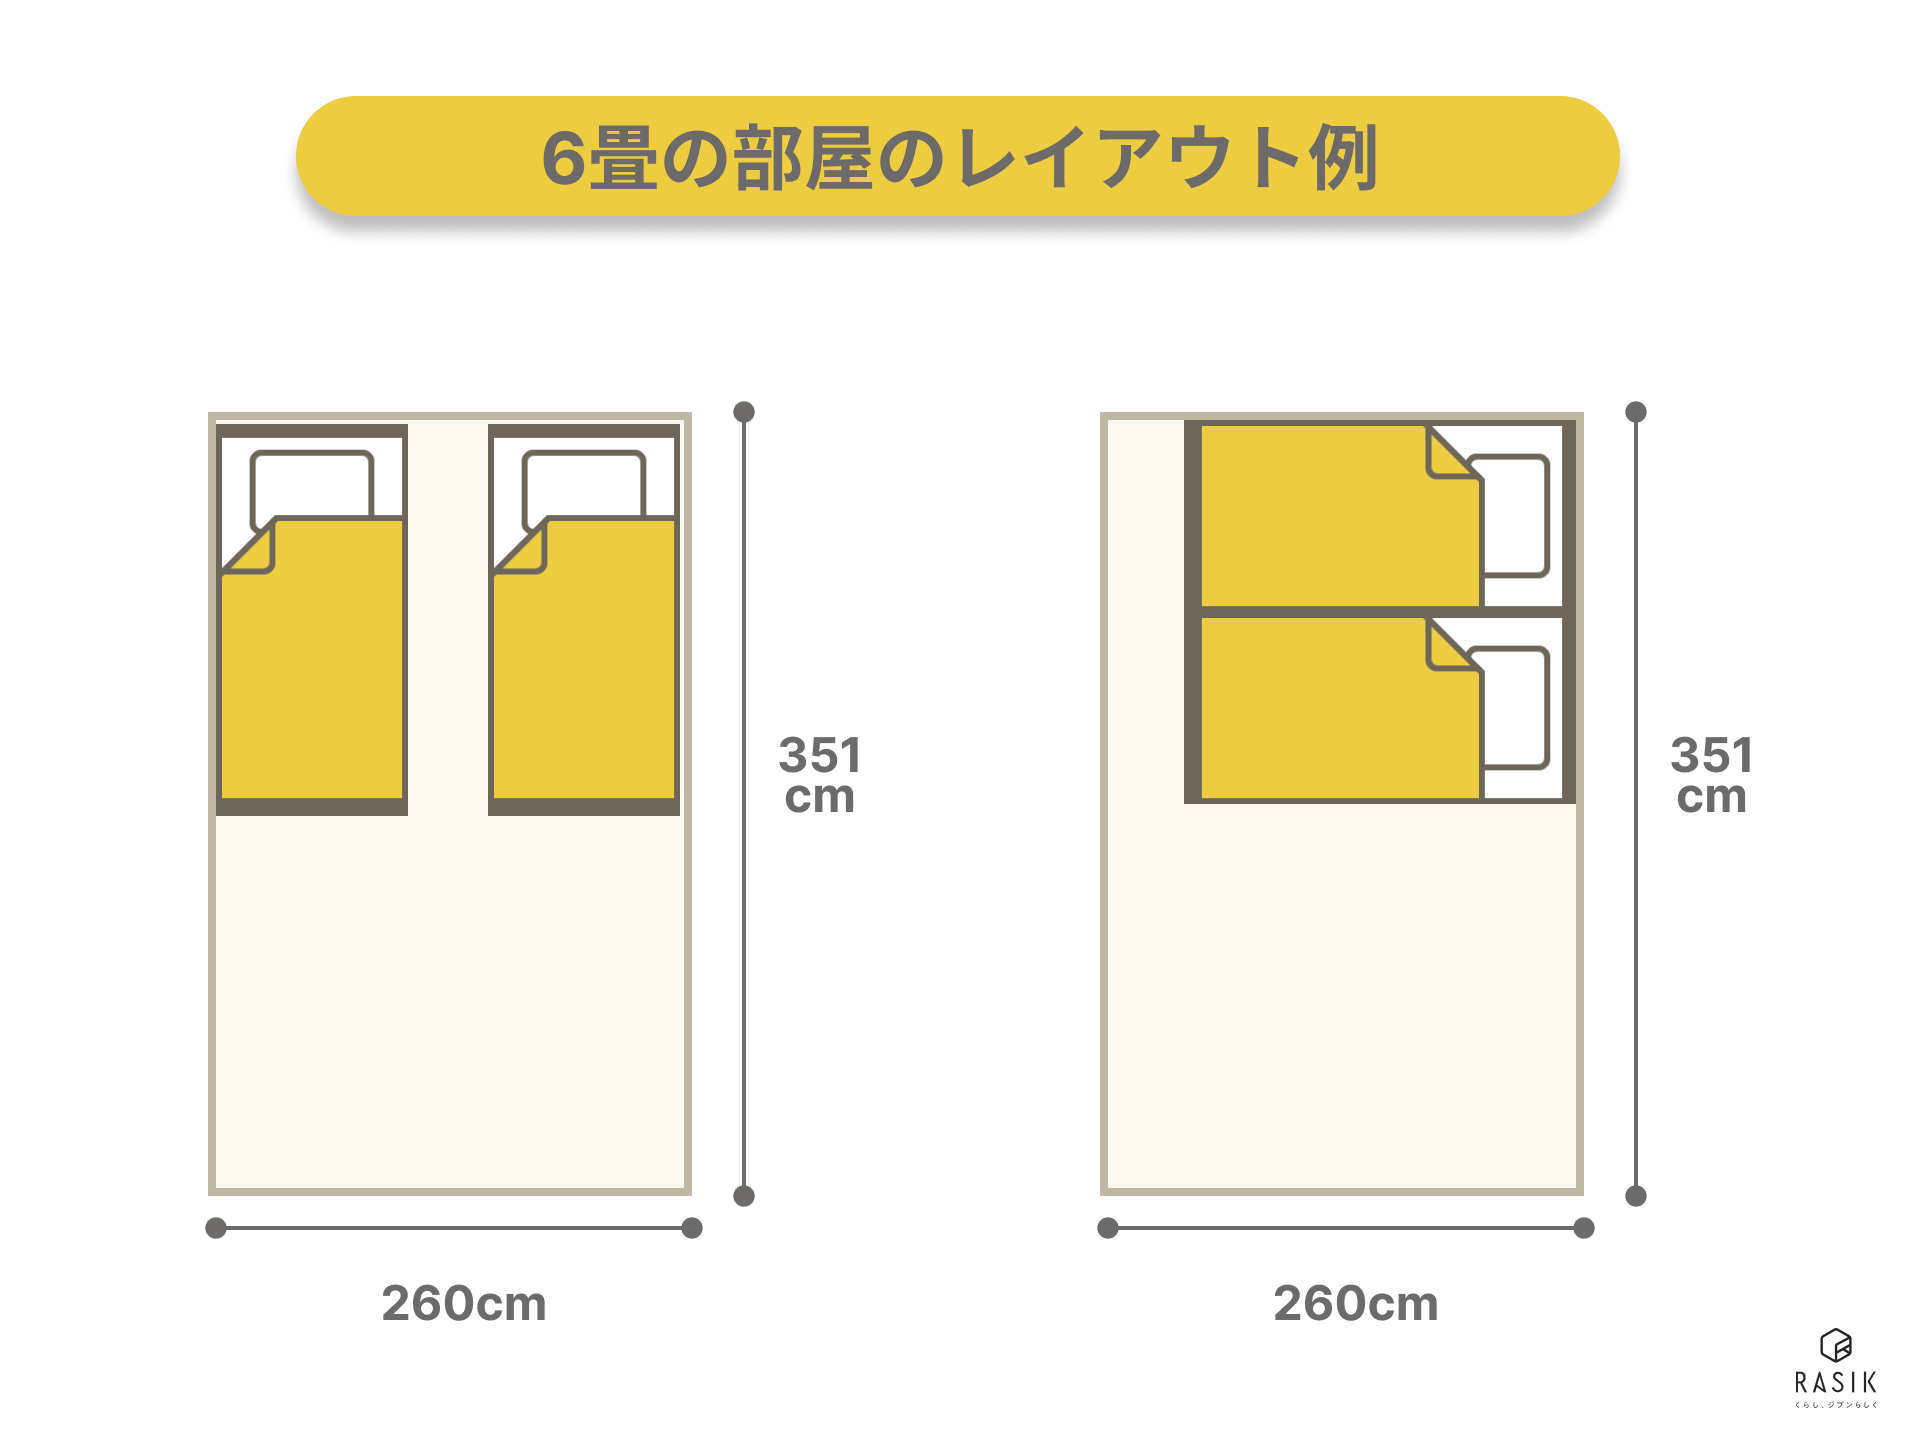 6畳の部屋にシングルベッド2つを置いたレイアウト例